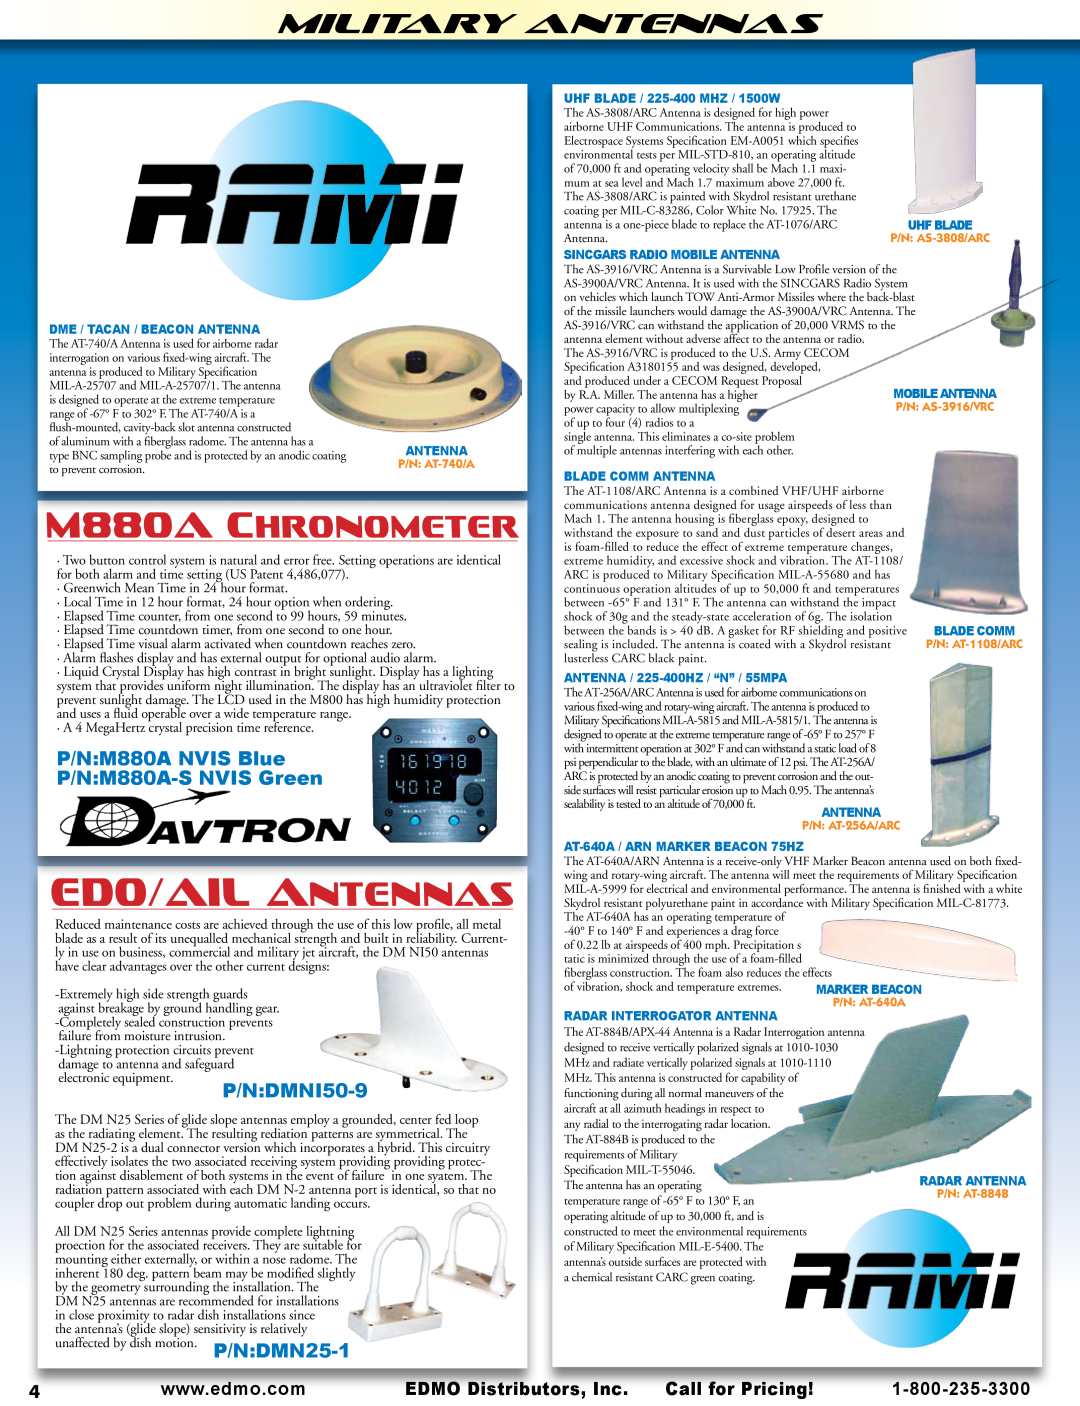 AeroComm SPH Series manual Edo/Ailantennas, M880ACHRONOMETER, Military Antennas, P/N M880A NVIS Blue P/N M880A-SNVIS Green 